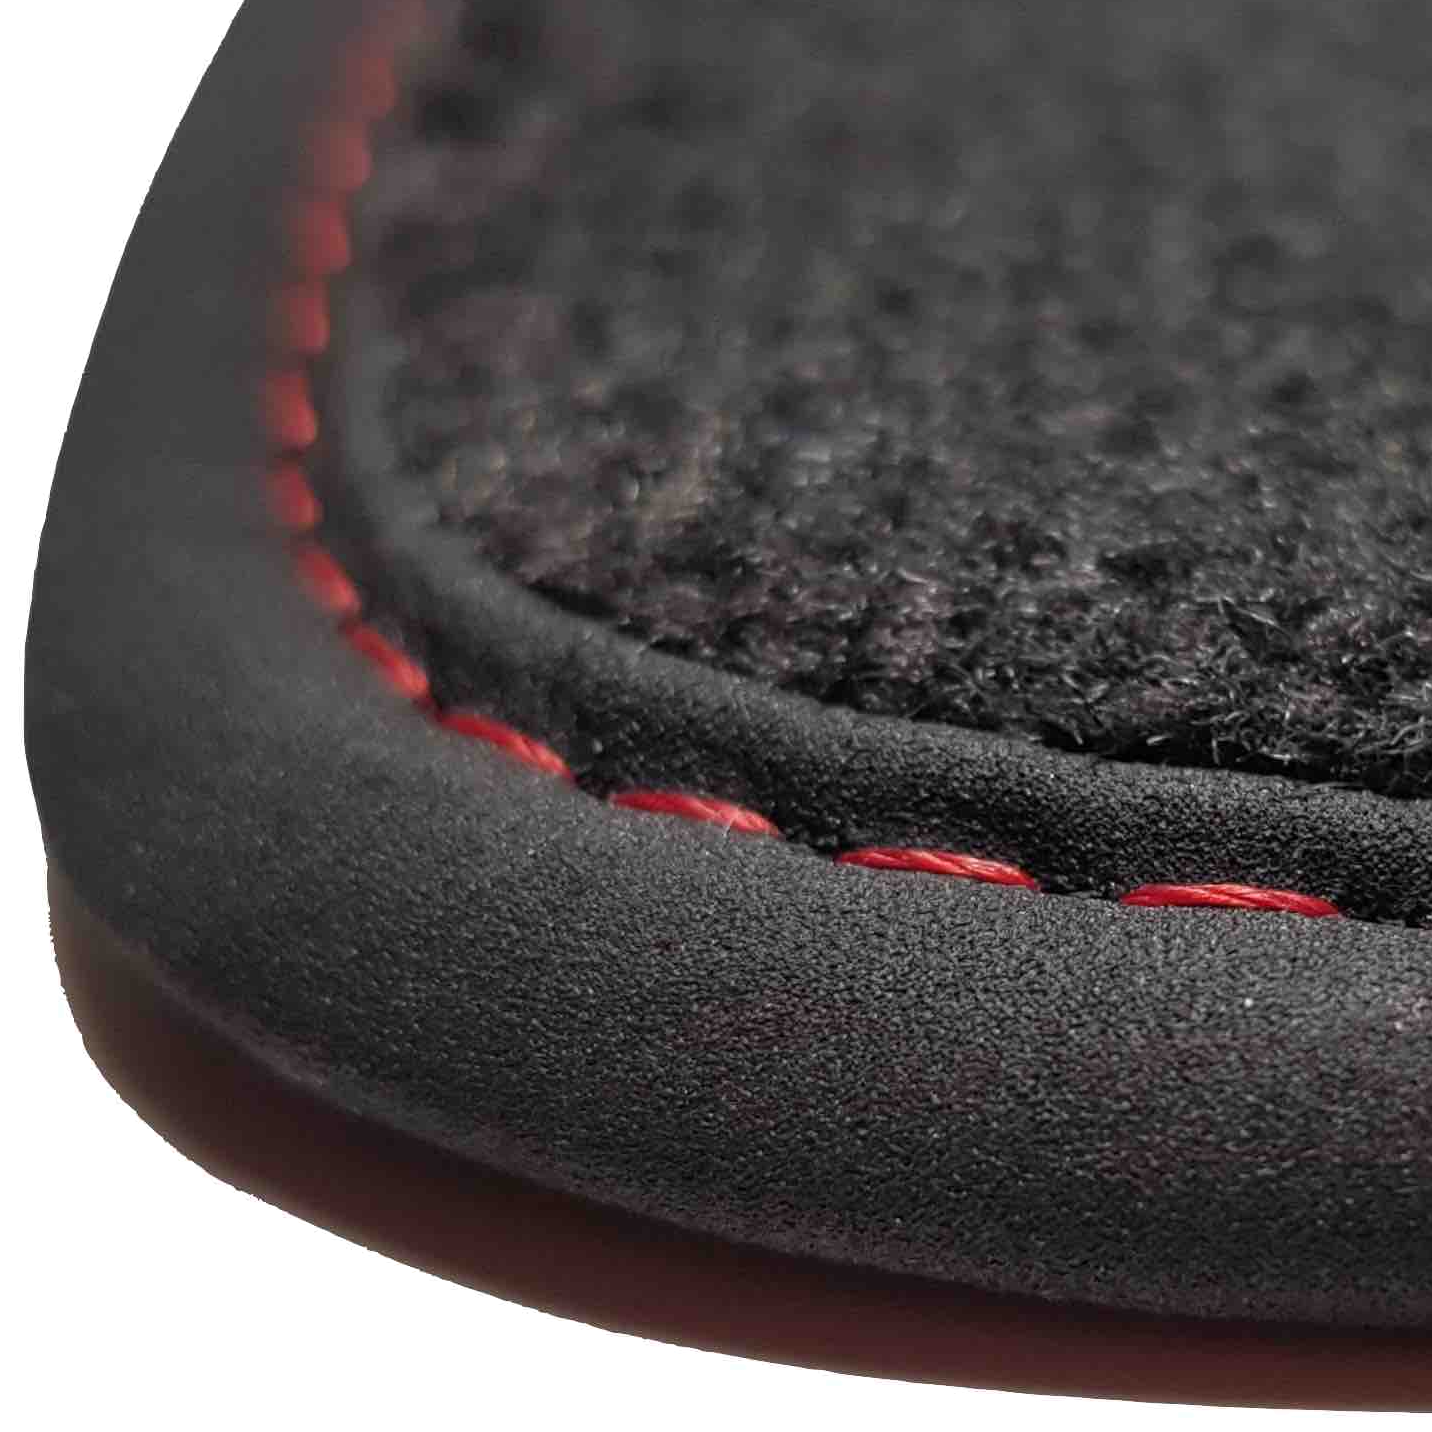 tapis auto Vel Satis phase 2 Renault prix discount livraison gratuite moquette noir bordure rouge